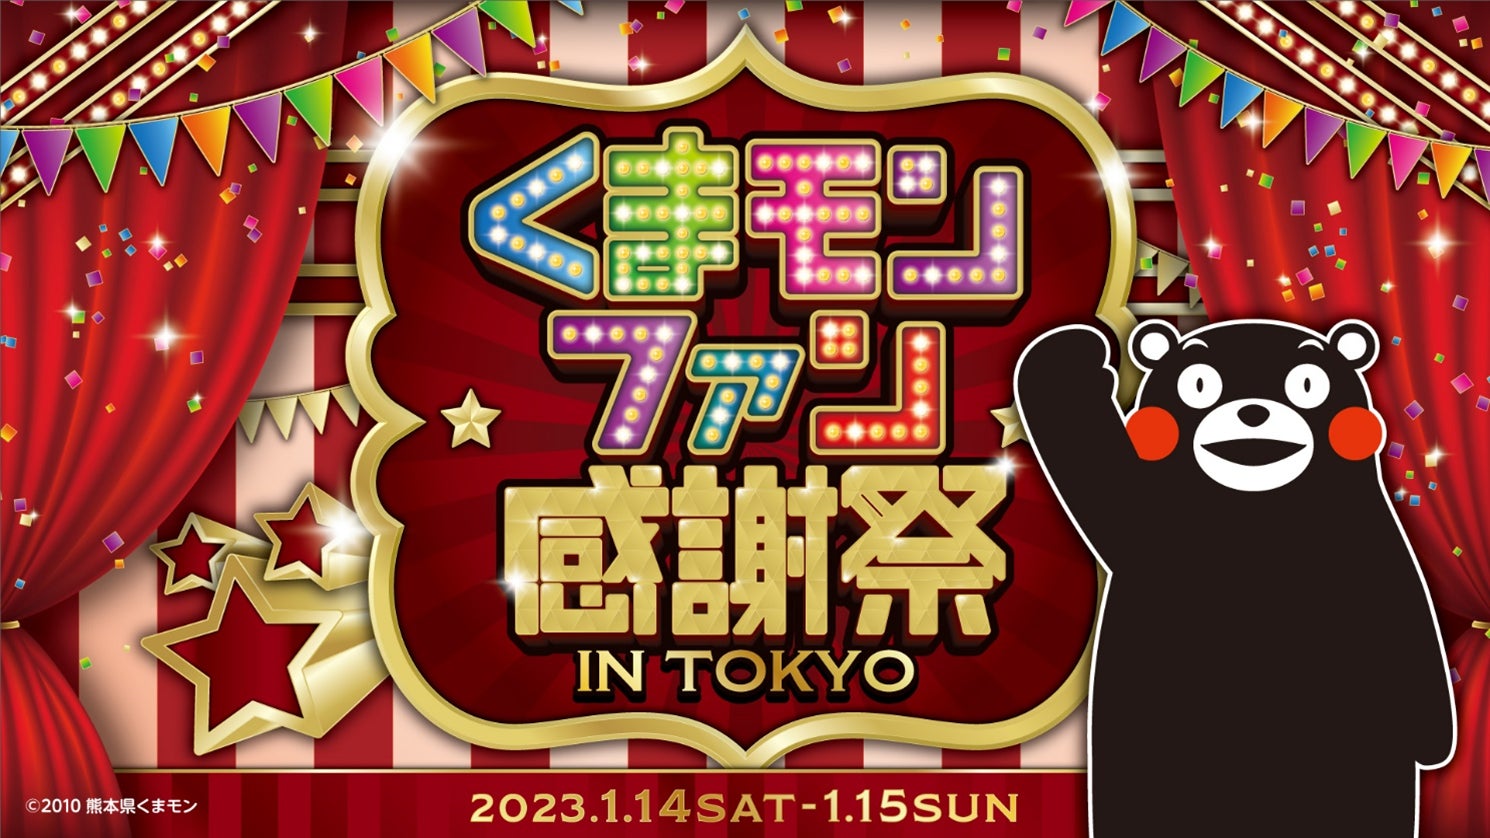 くまモンファン感謝祭2023 in TOKYO～KUMAMON LAND～開催くまモンが 